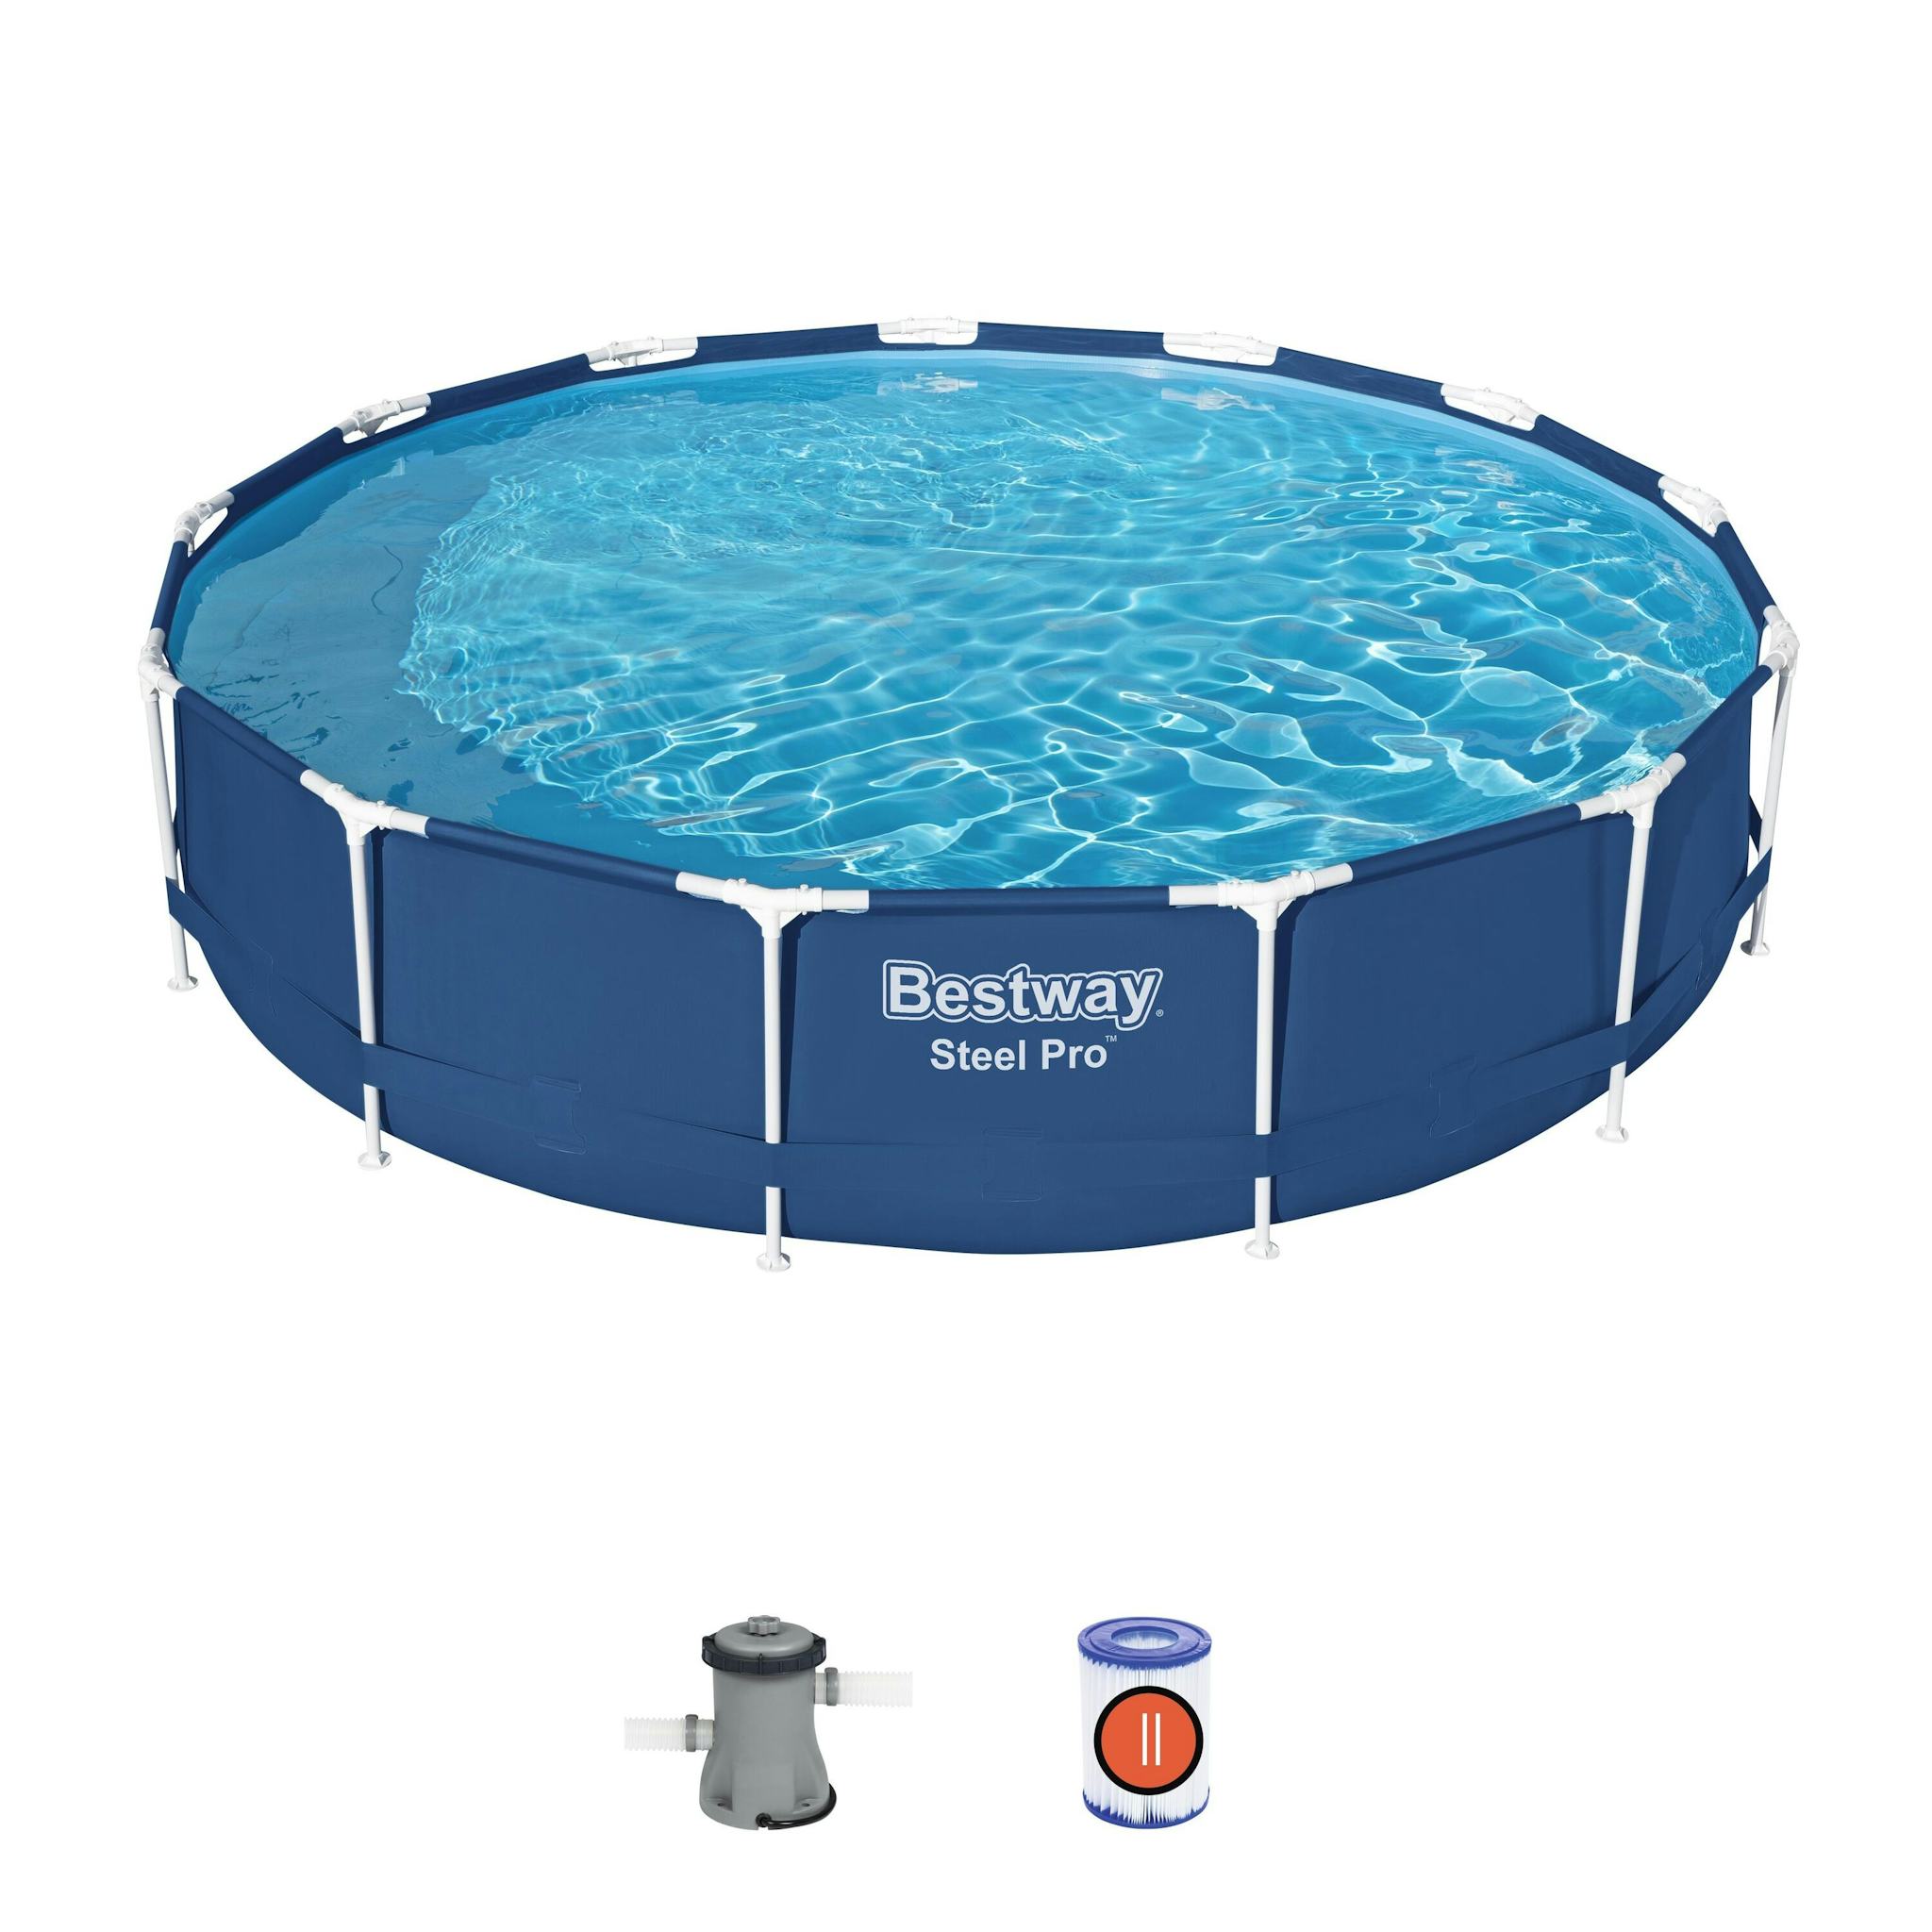 Bovengronds zwembad Steel Pro bovengrondse ronde set van 396x84 cm Bestway 2